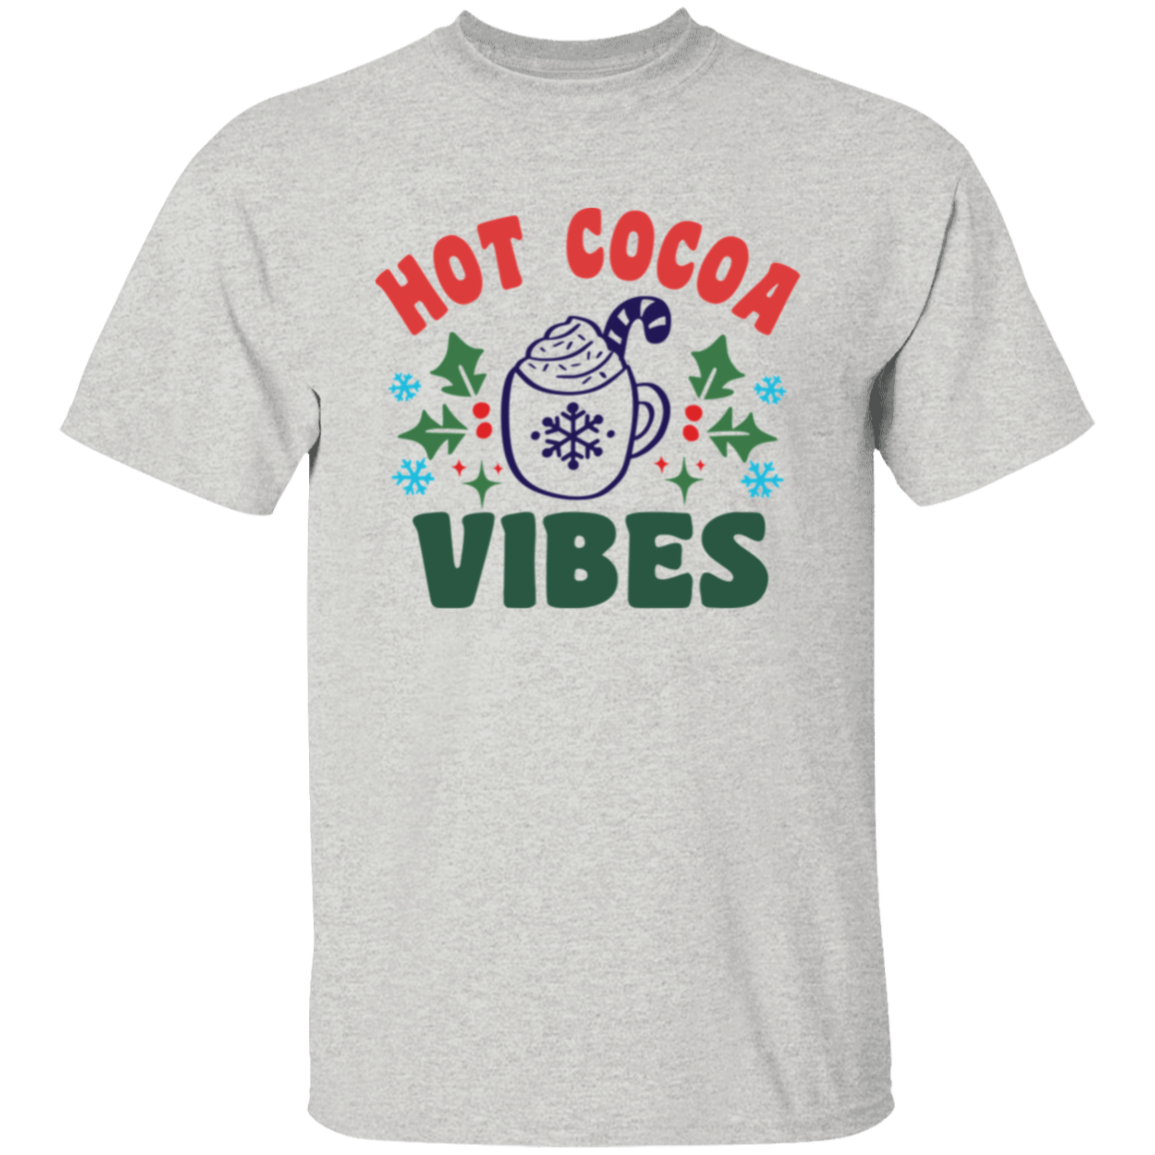 Hot Cocoa 5.3 oz. T-Shirt